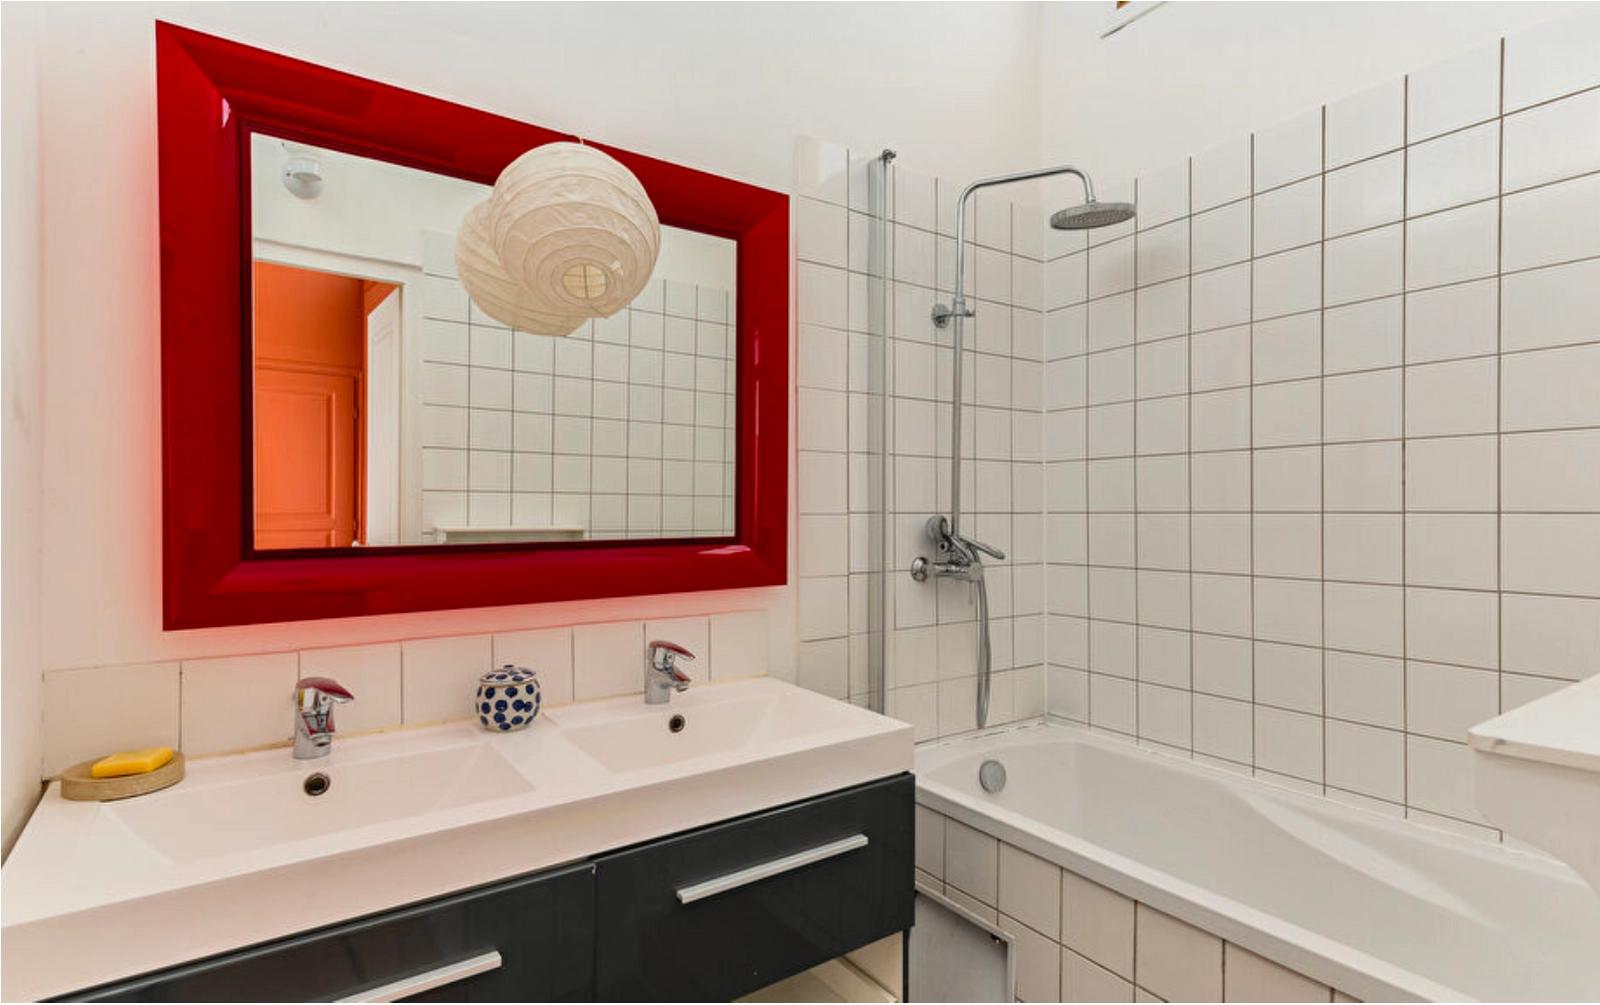 Salle de bain dans La campagne à Paris - décor Zoé de las Cases - 1